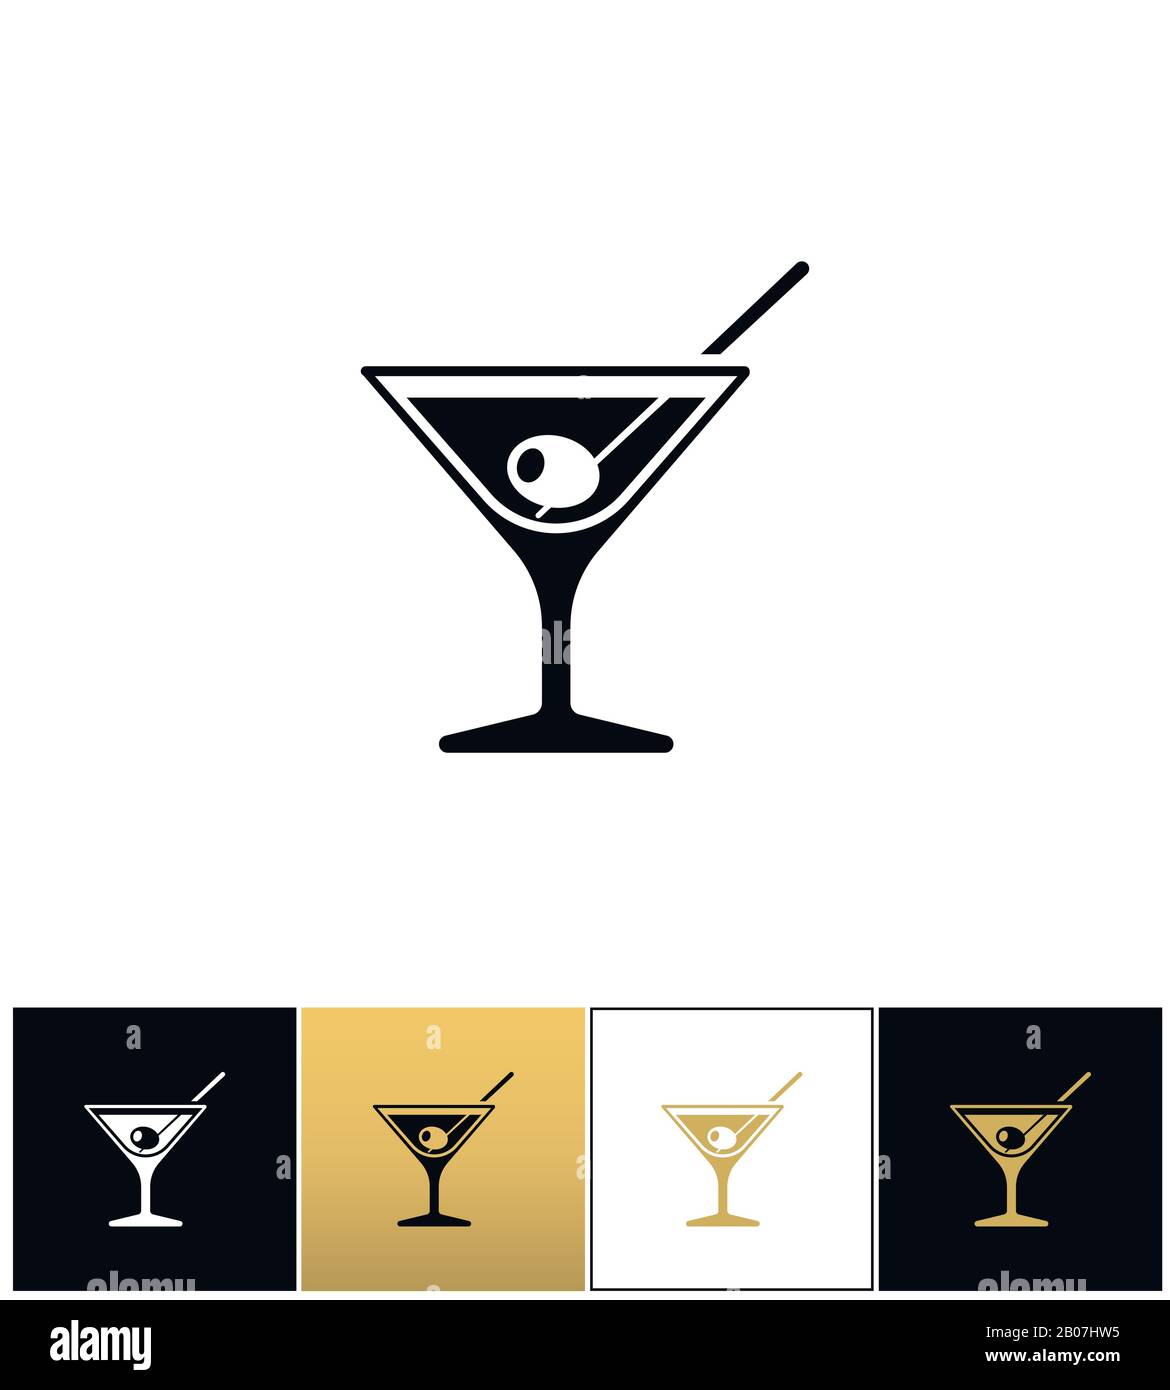 Cocktailglas mit Martini Wodka und Oliven Vektor-Ikonen auf schwarzem, weißem und goldenem Hintergrund Stock Vektor